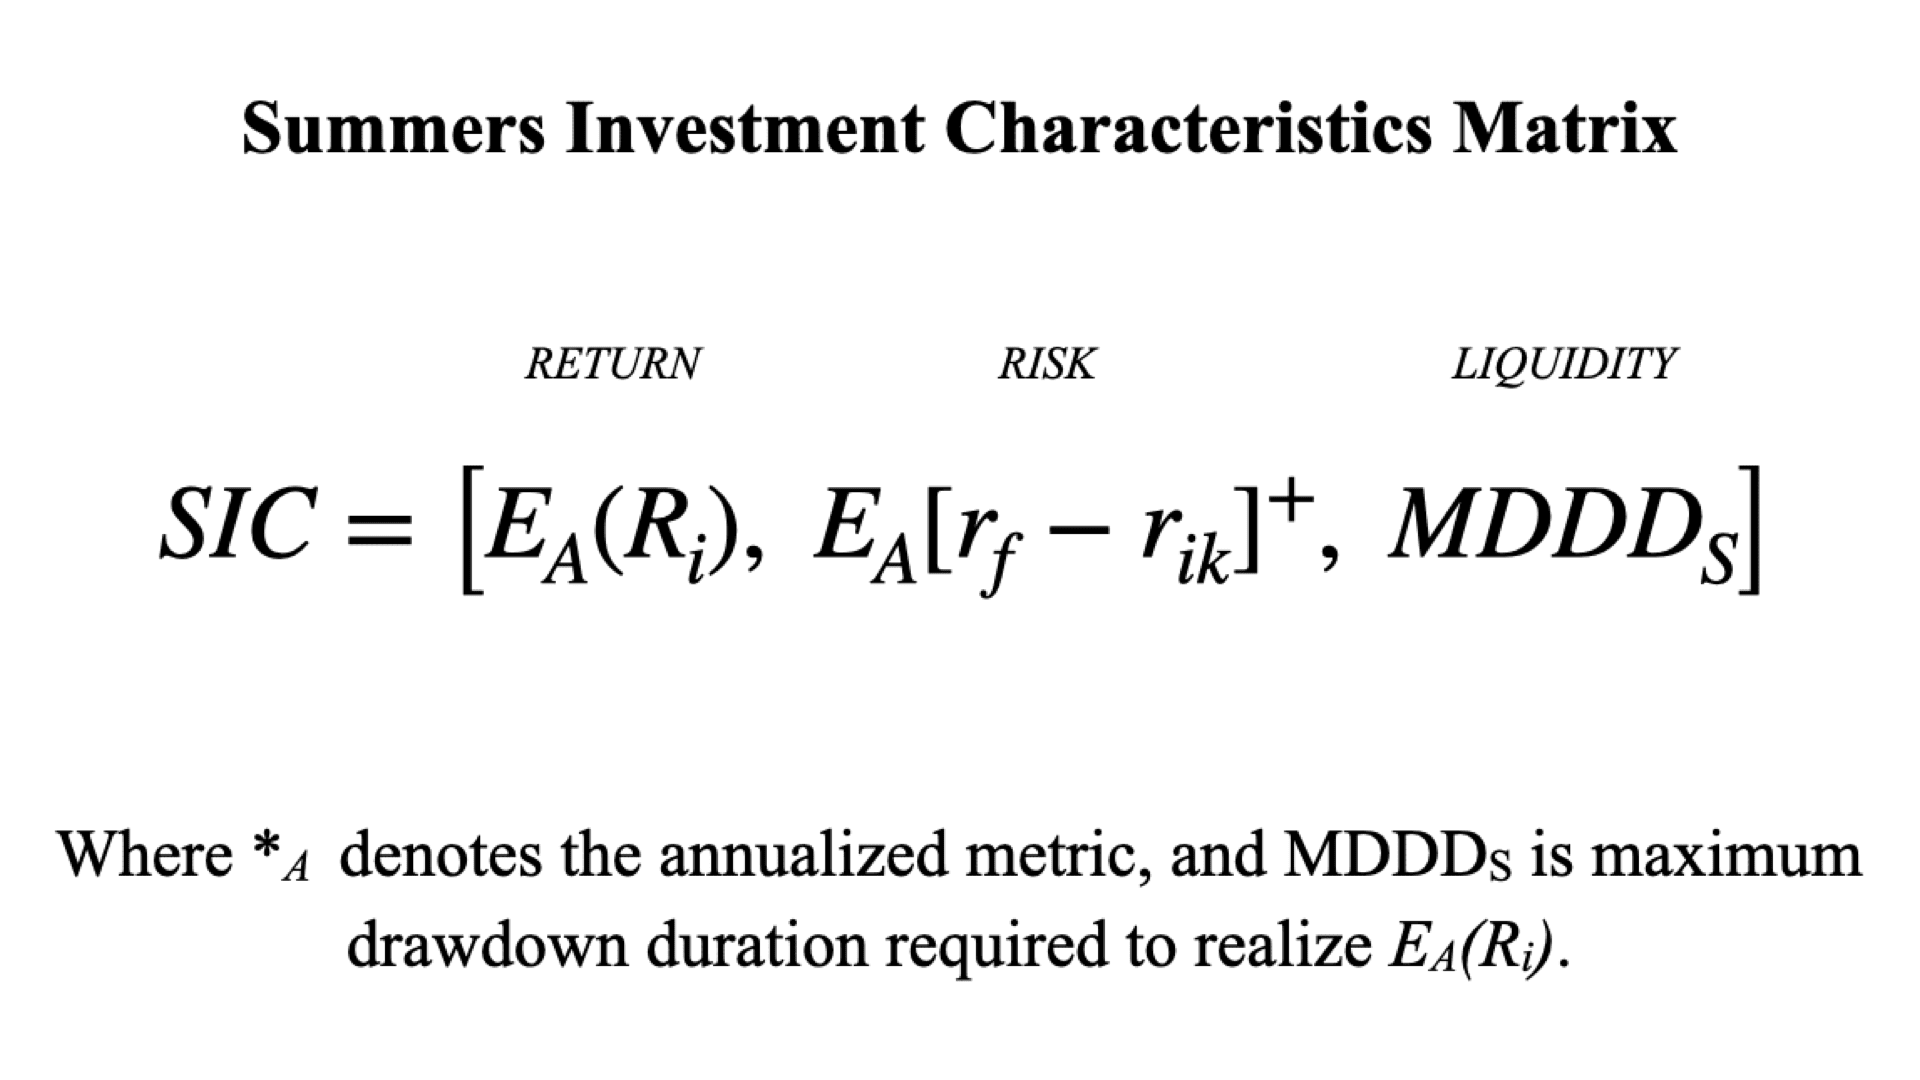 Summers Investment Characteristics ("SIC") Matrix